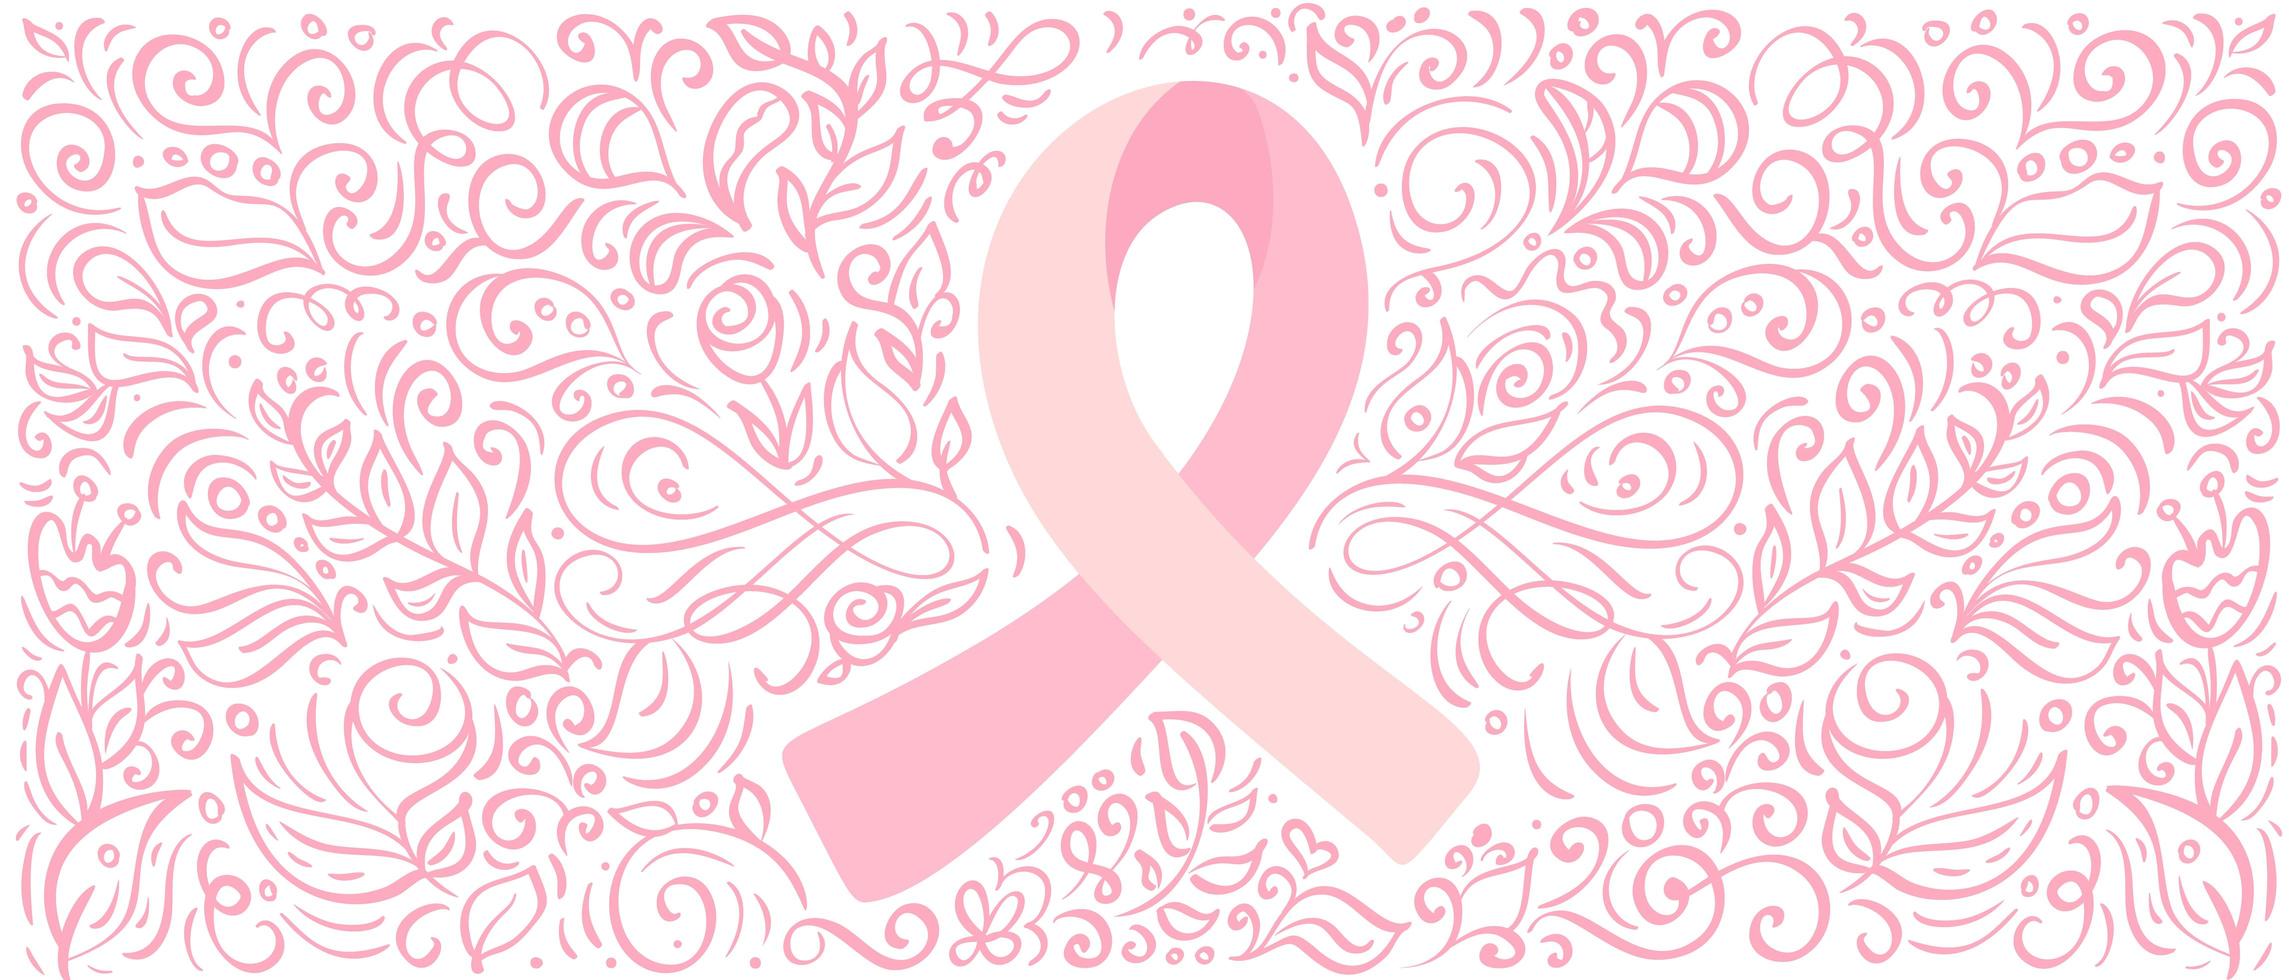 fita de banner estilizada de vetor rosa de mama canser para outubro é o mês de conscientização do câncer. ilustração de caligrafia em fundo rosa florido